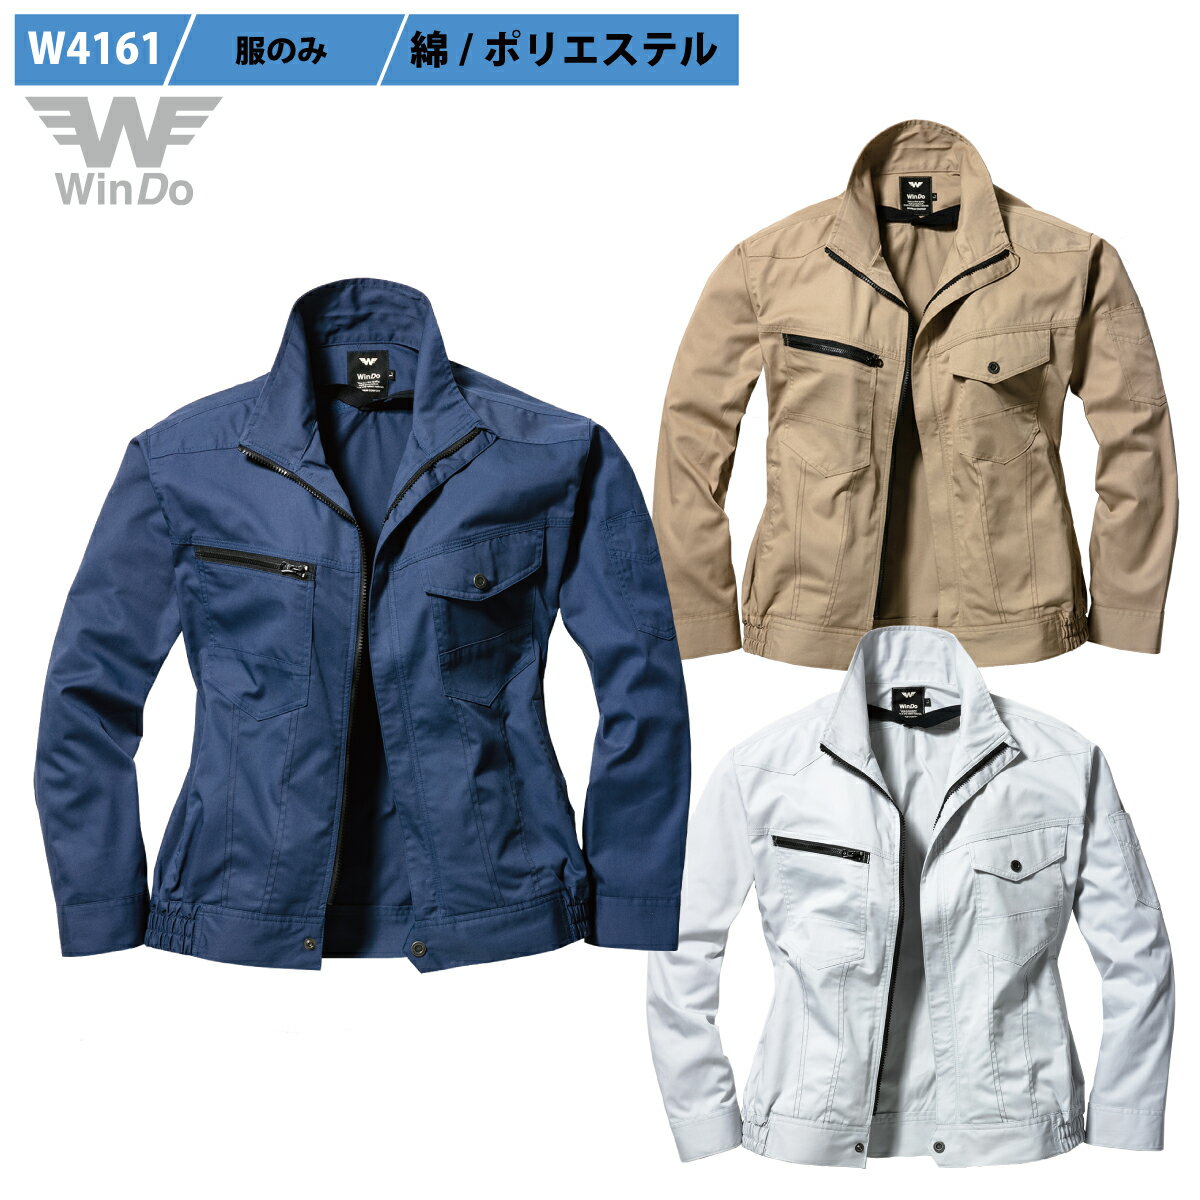 [WinDo] 空調空冷服/服のみ, 長袖ブルゾン, 綿60%ポリ40%, 軽くて丈夫, 綿リッチな肌触り, 撃涼の通風性, 楽らく電池操作, W4161【在庫限り】